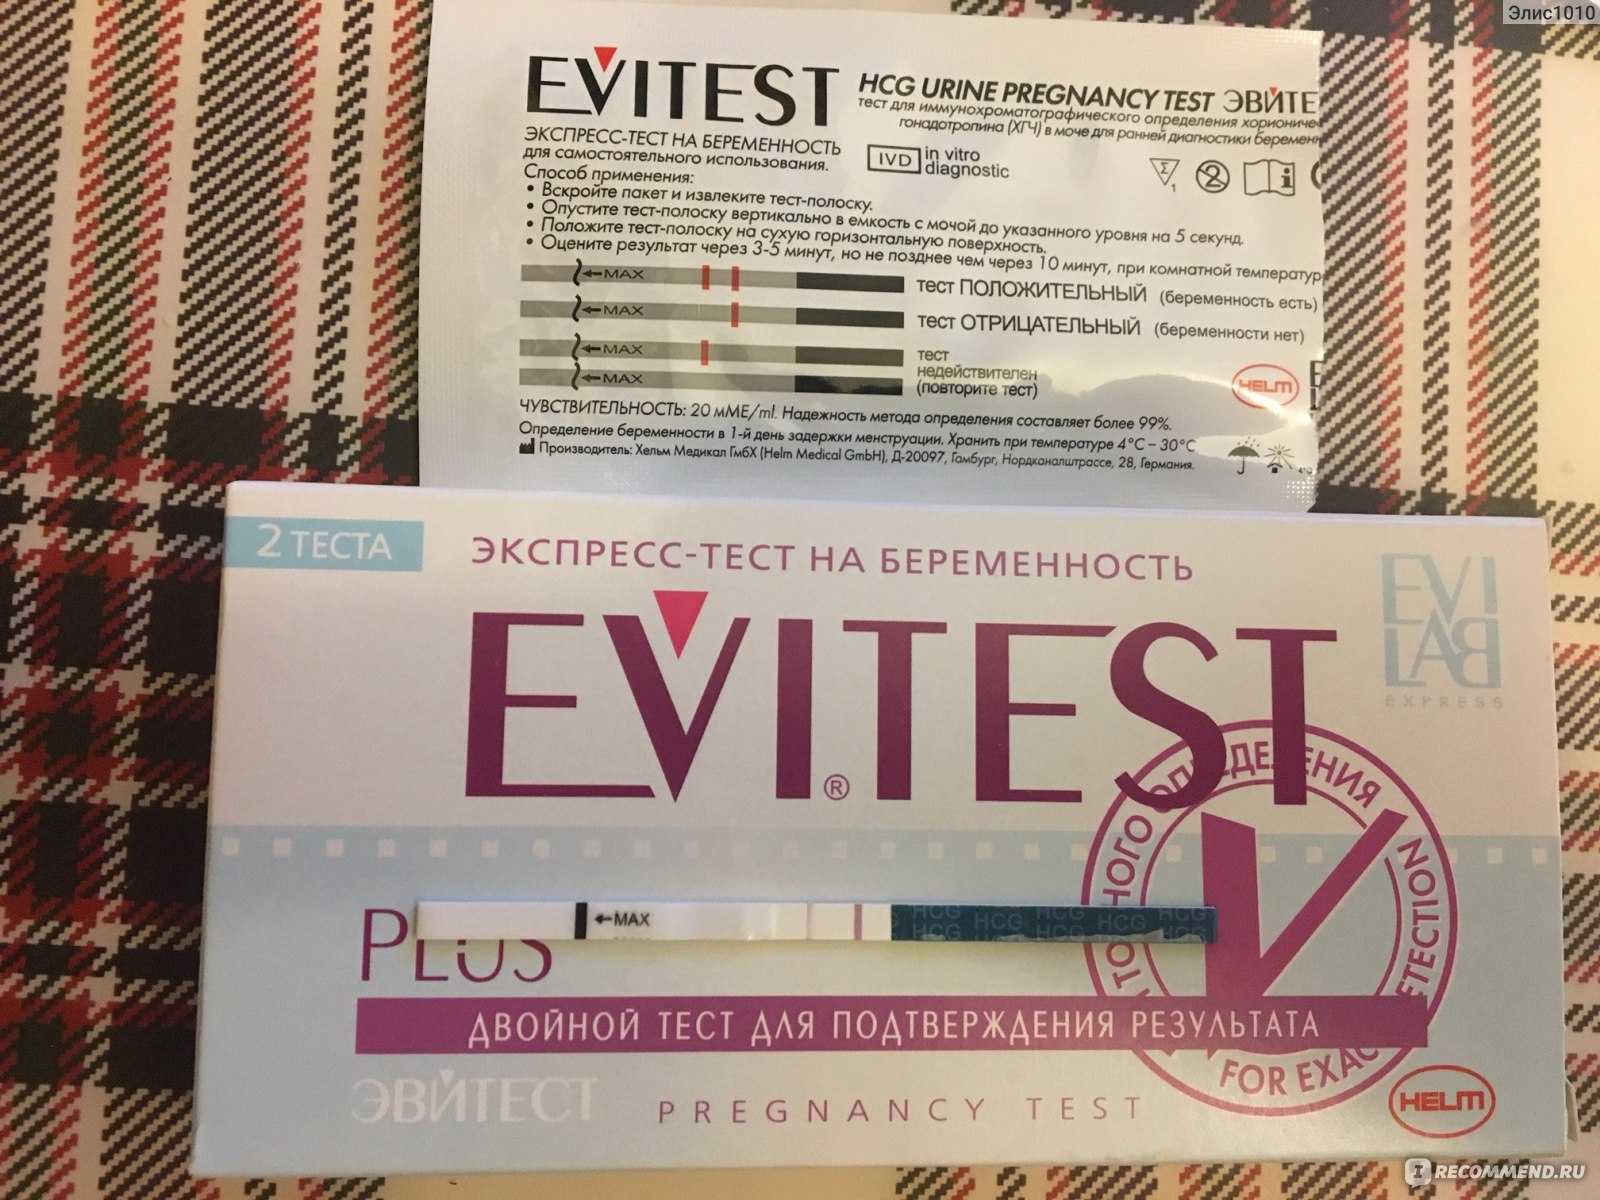 Цена теста на беременность в аптеках, где купить самый дешевый тест